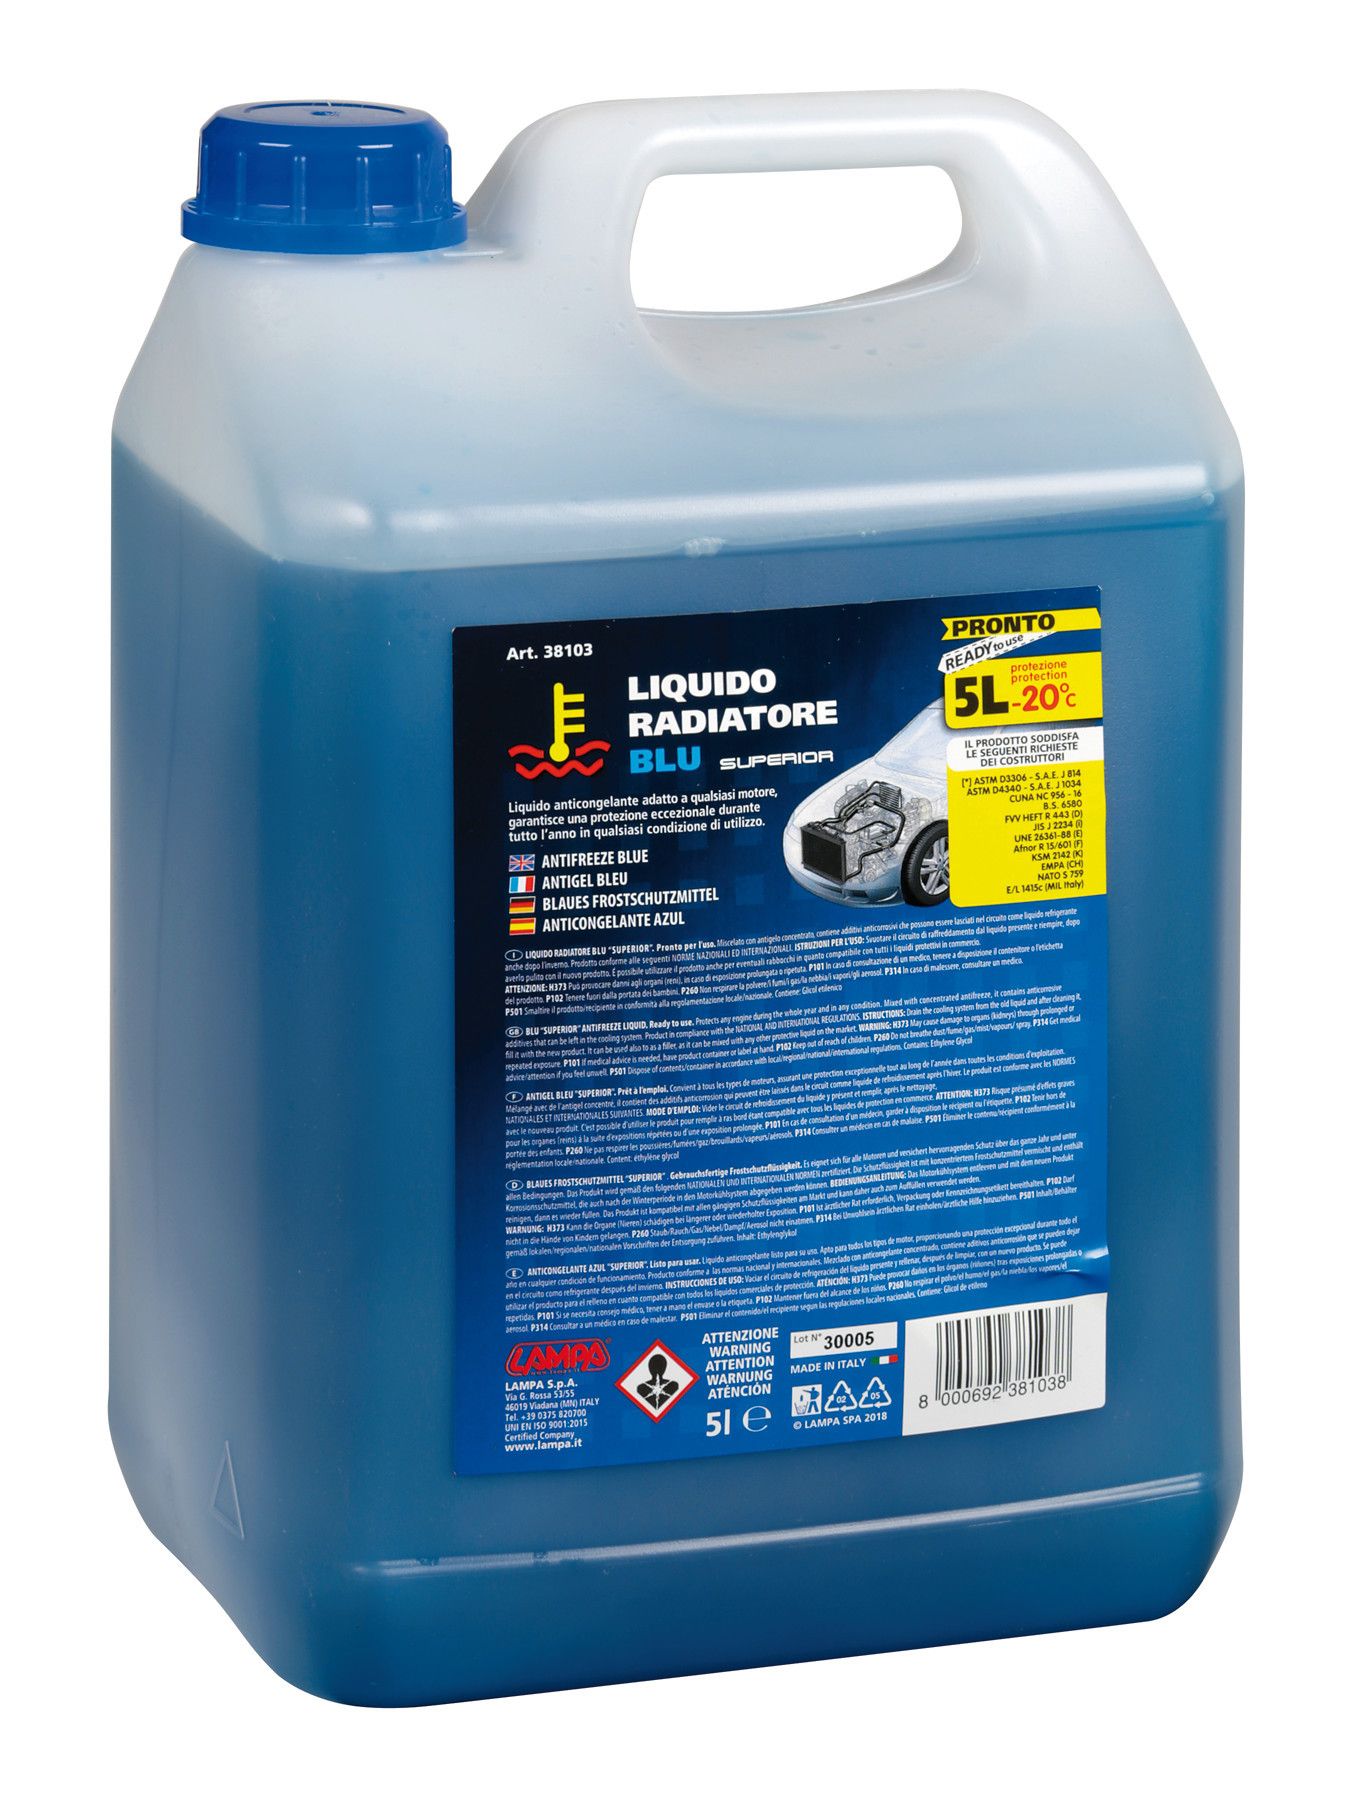 LAMPA - Superior-Blu, liquido antigelo radiatore (-20°C) - 5 L